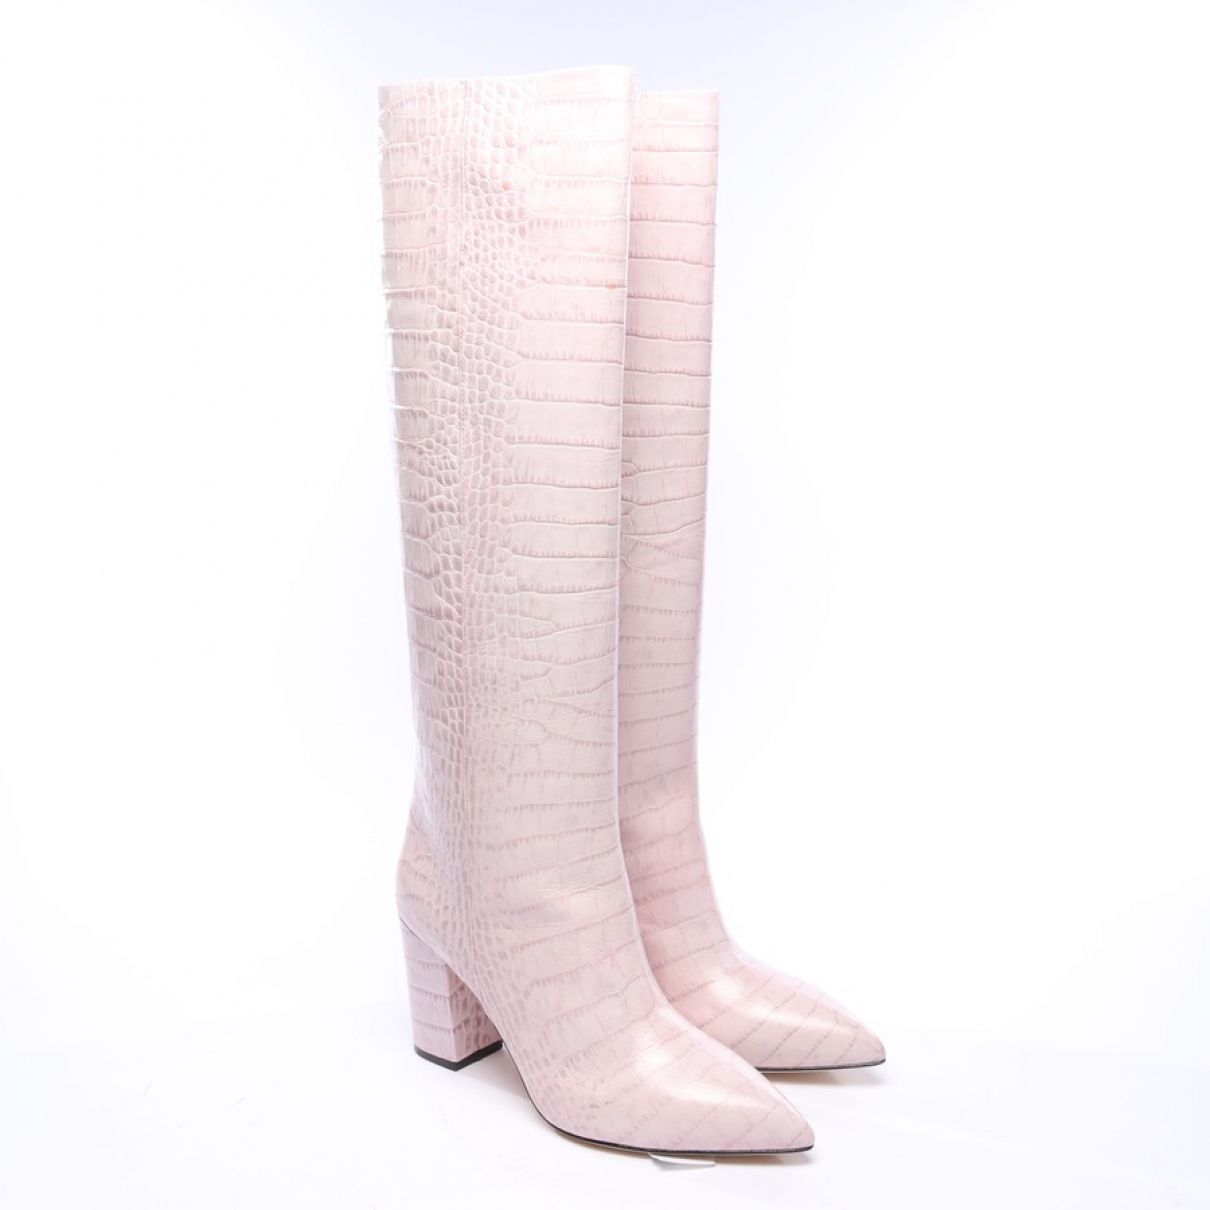 Boots px133xcabl Paris Texas en coloris Rose Femme Chaussures Bottes Bottes hauteur genou 